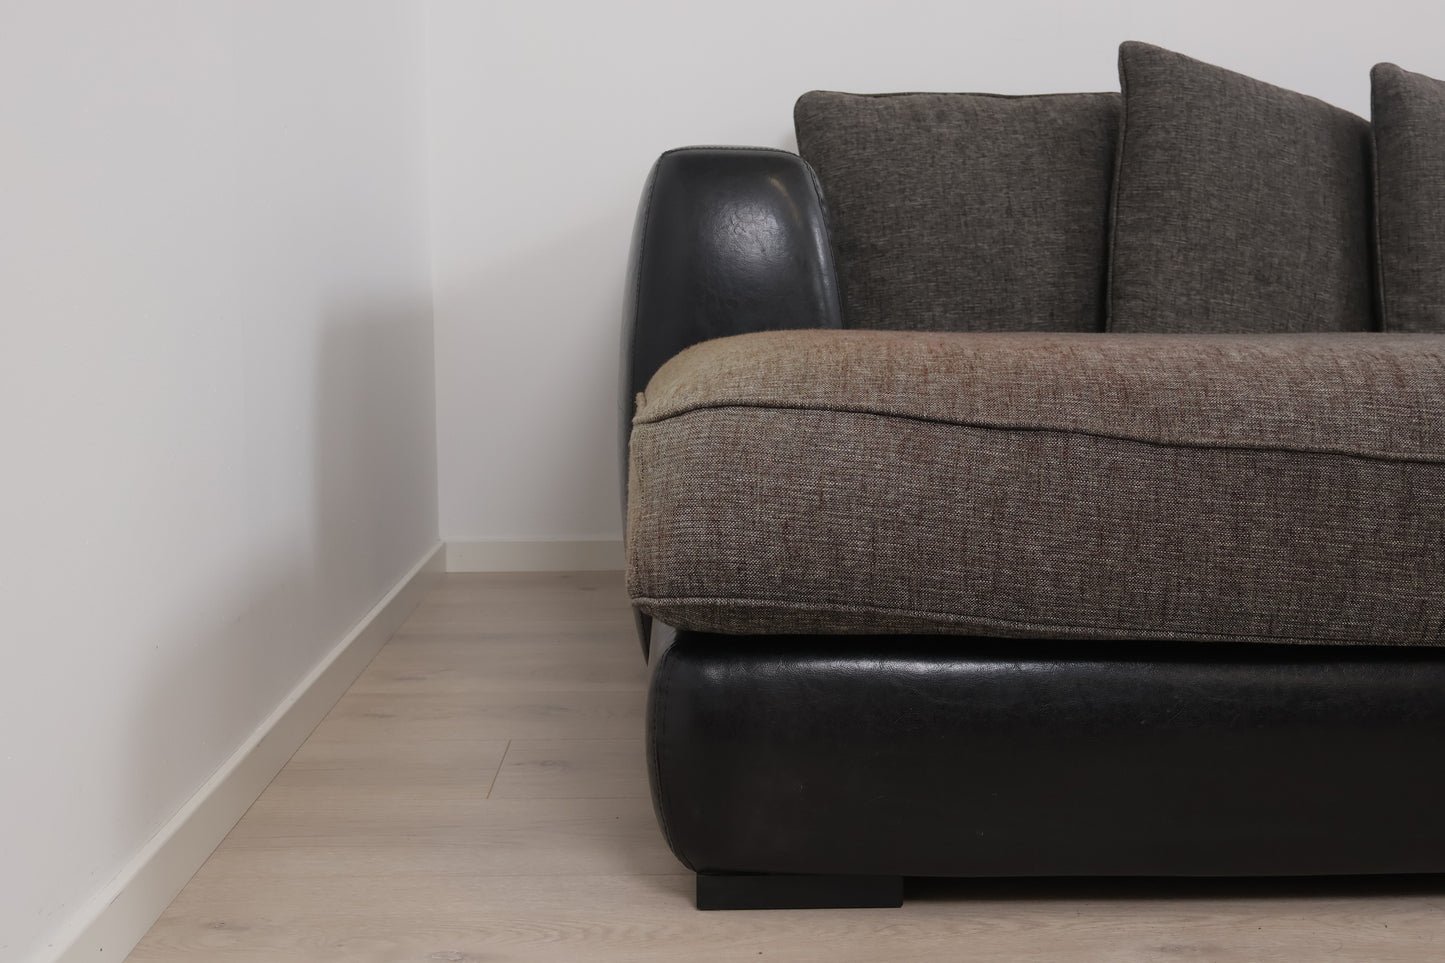 Nyrenset | Romslig grå/brun Boston u-sofa med sjeselong